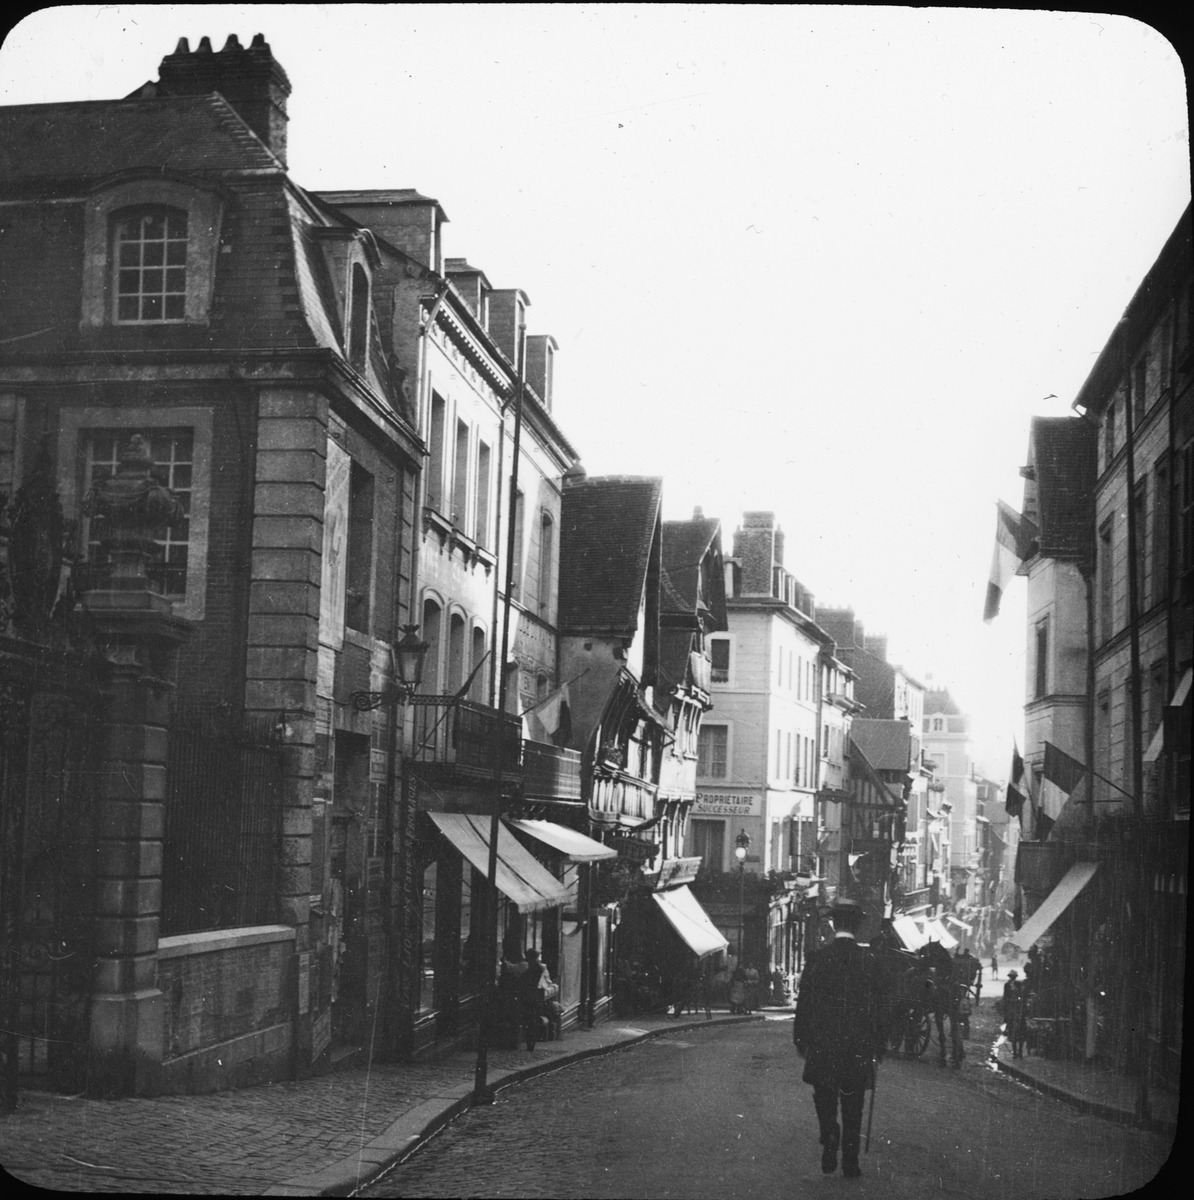 Skioptikonbild med motiv från Grand Rue i Lisieux.
Bilden har förvarats i kartong märkt: Resan 1908. Rouen 3. Lisiaux 5. VIII. Text på bild: "Grande Rue".